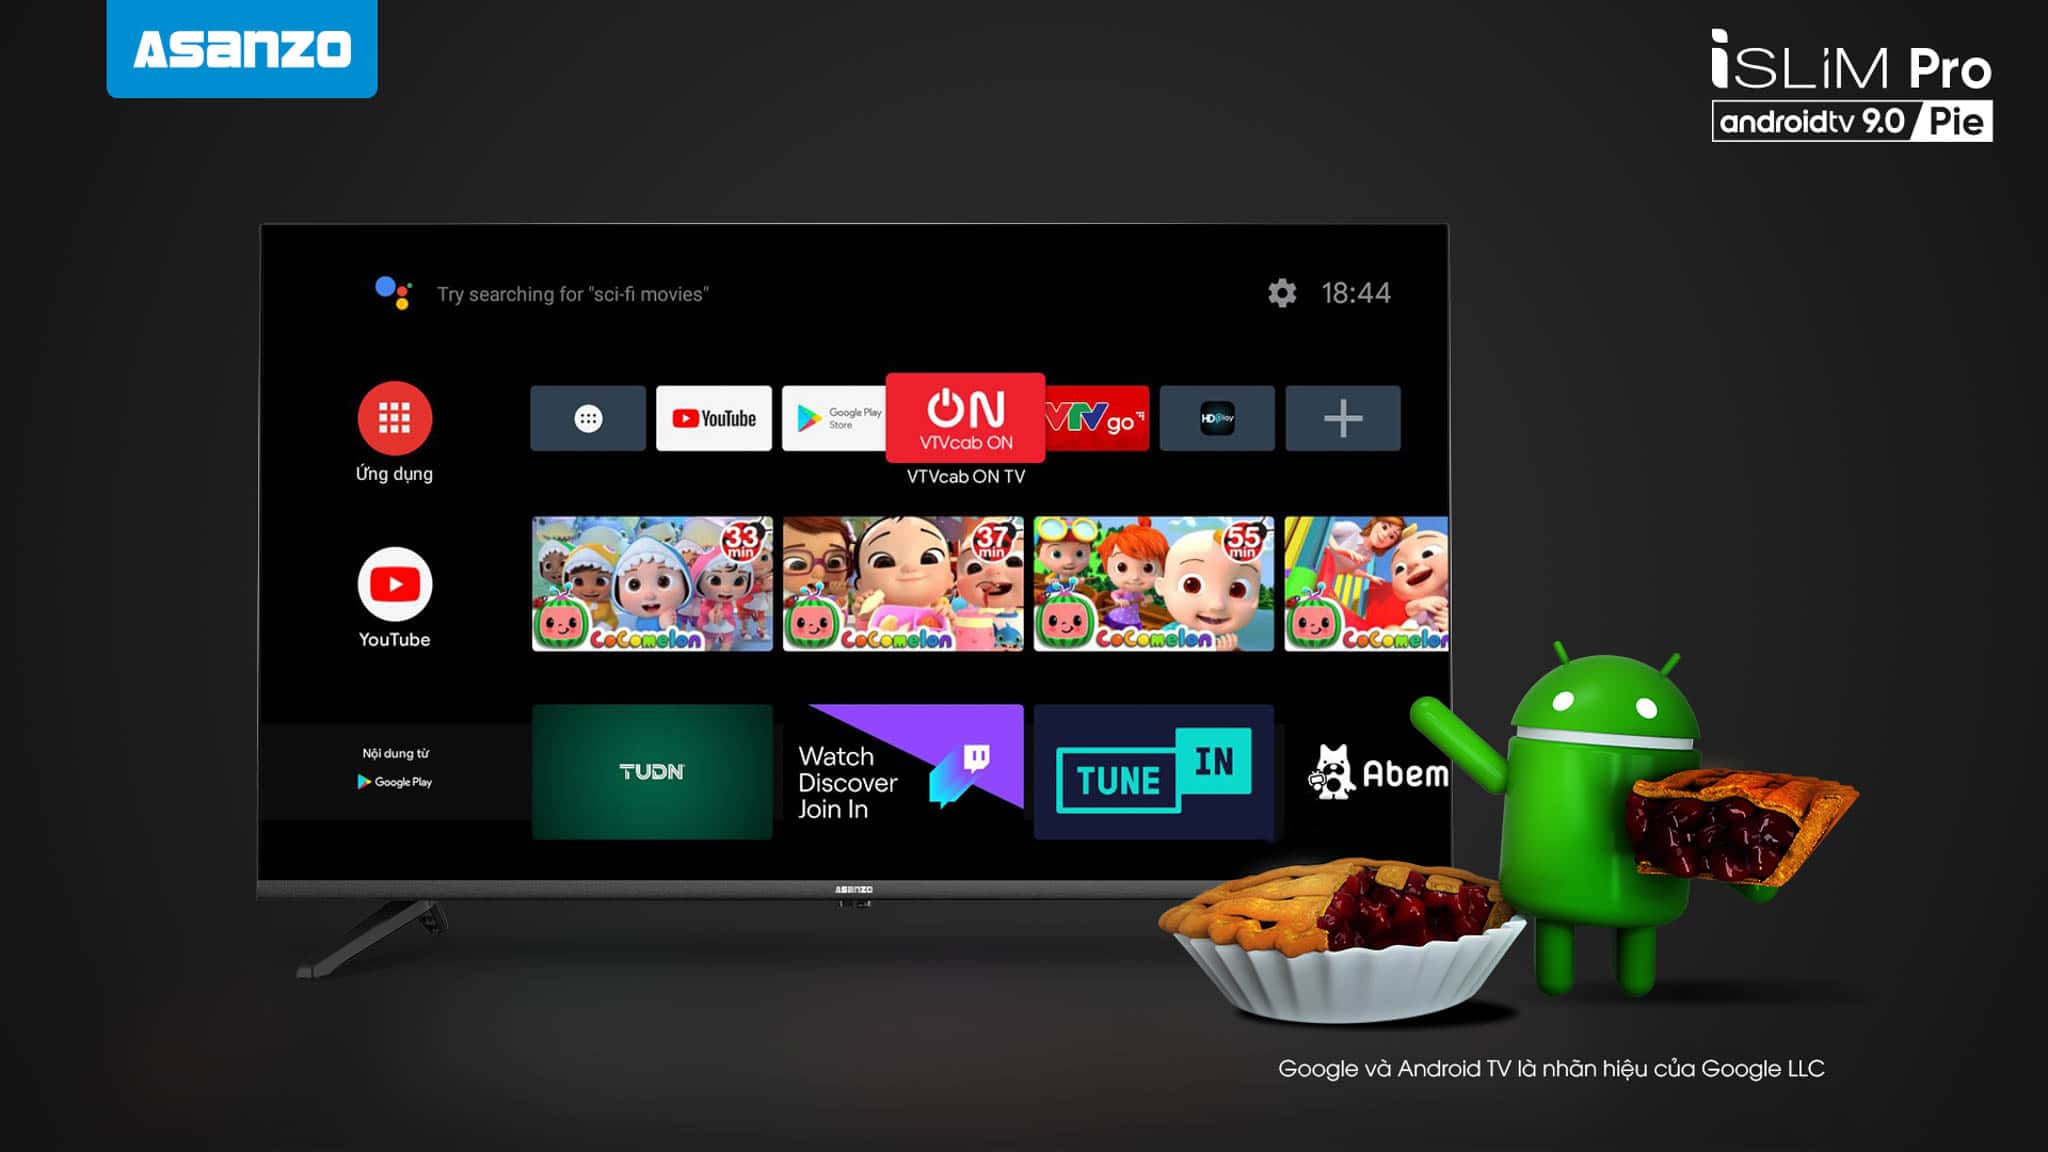 Asanzo ra mắt bộ đôi TV iSLIM Pro - Android 9.0 Pie nhiều cải tiến đón đầu mùa mua sắm